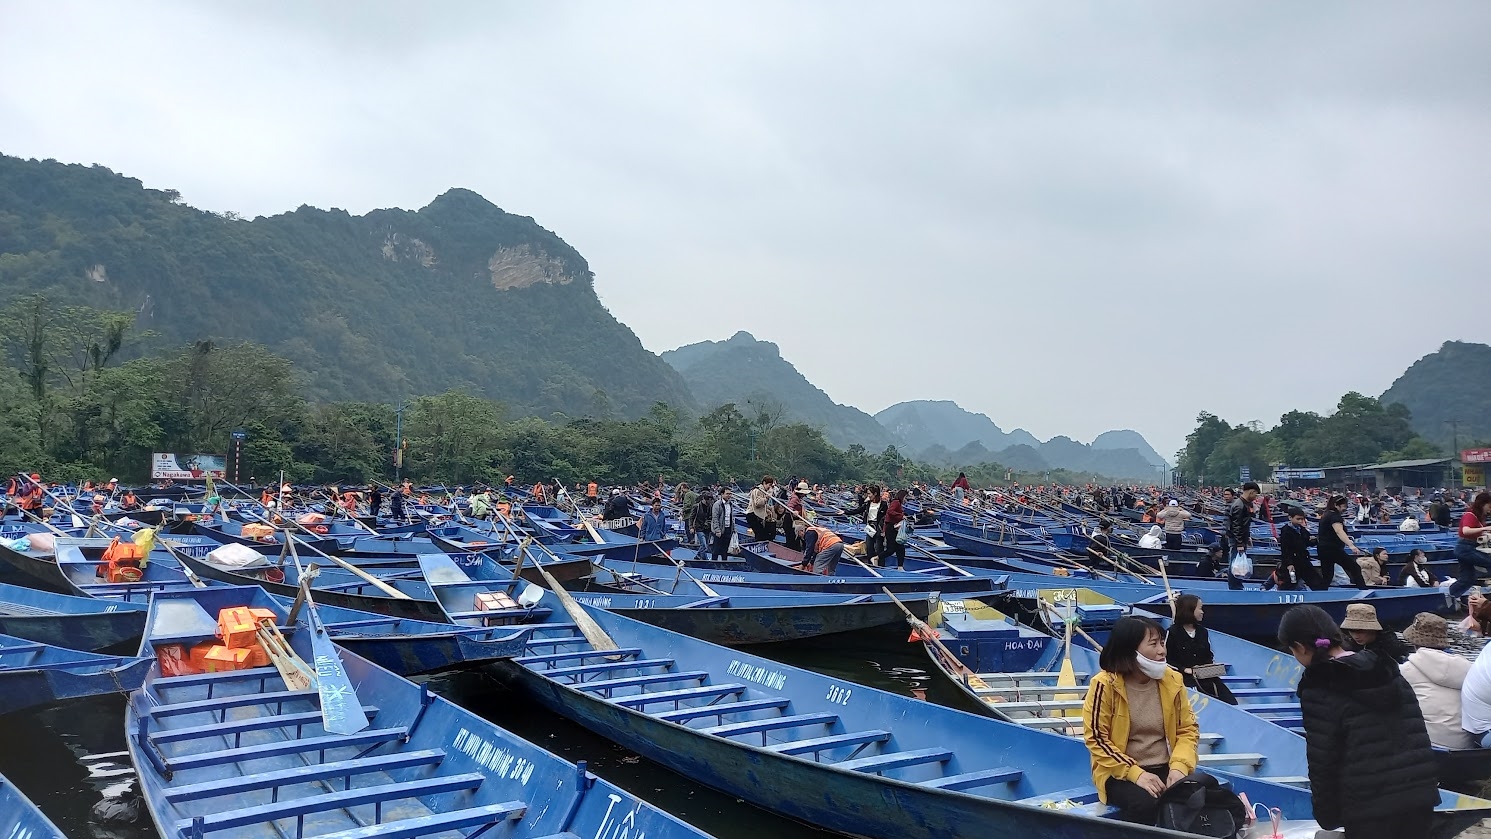 Bến đò tuyến Hương Tích có hàng trăm con đò đỗ san sát trên mặt nước khiến du khách phải tự di chuyển qua những con đò để tìm đường lên bờ